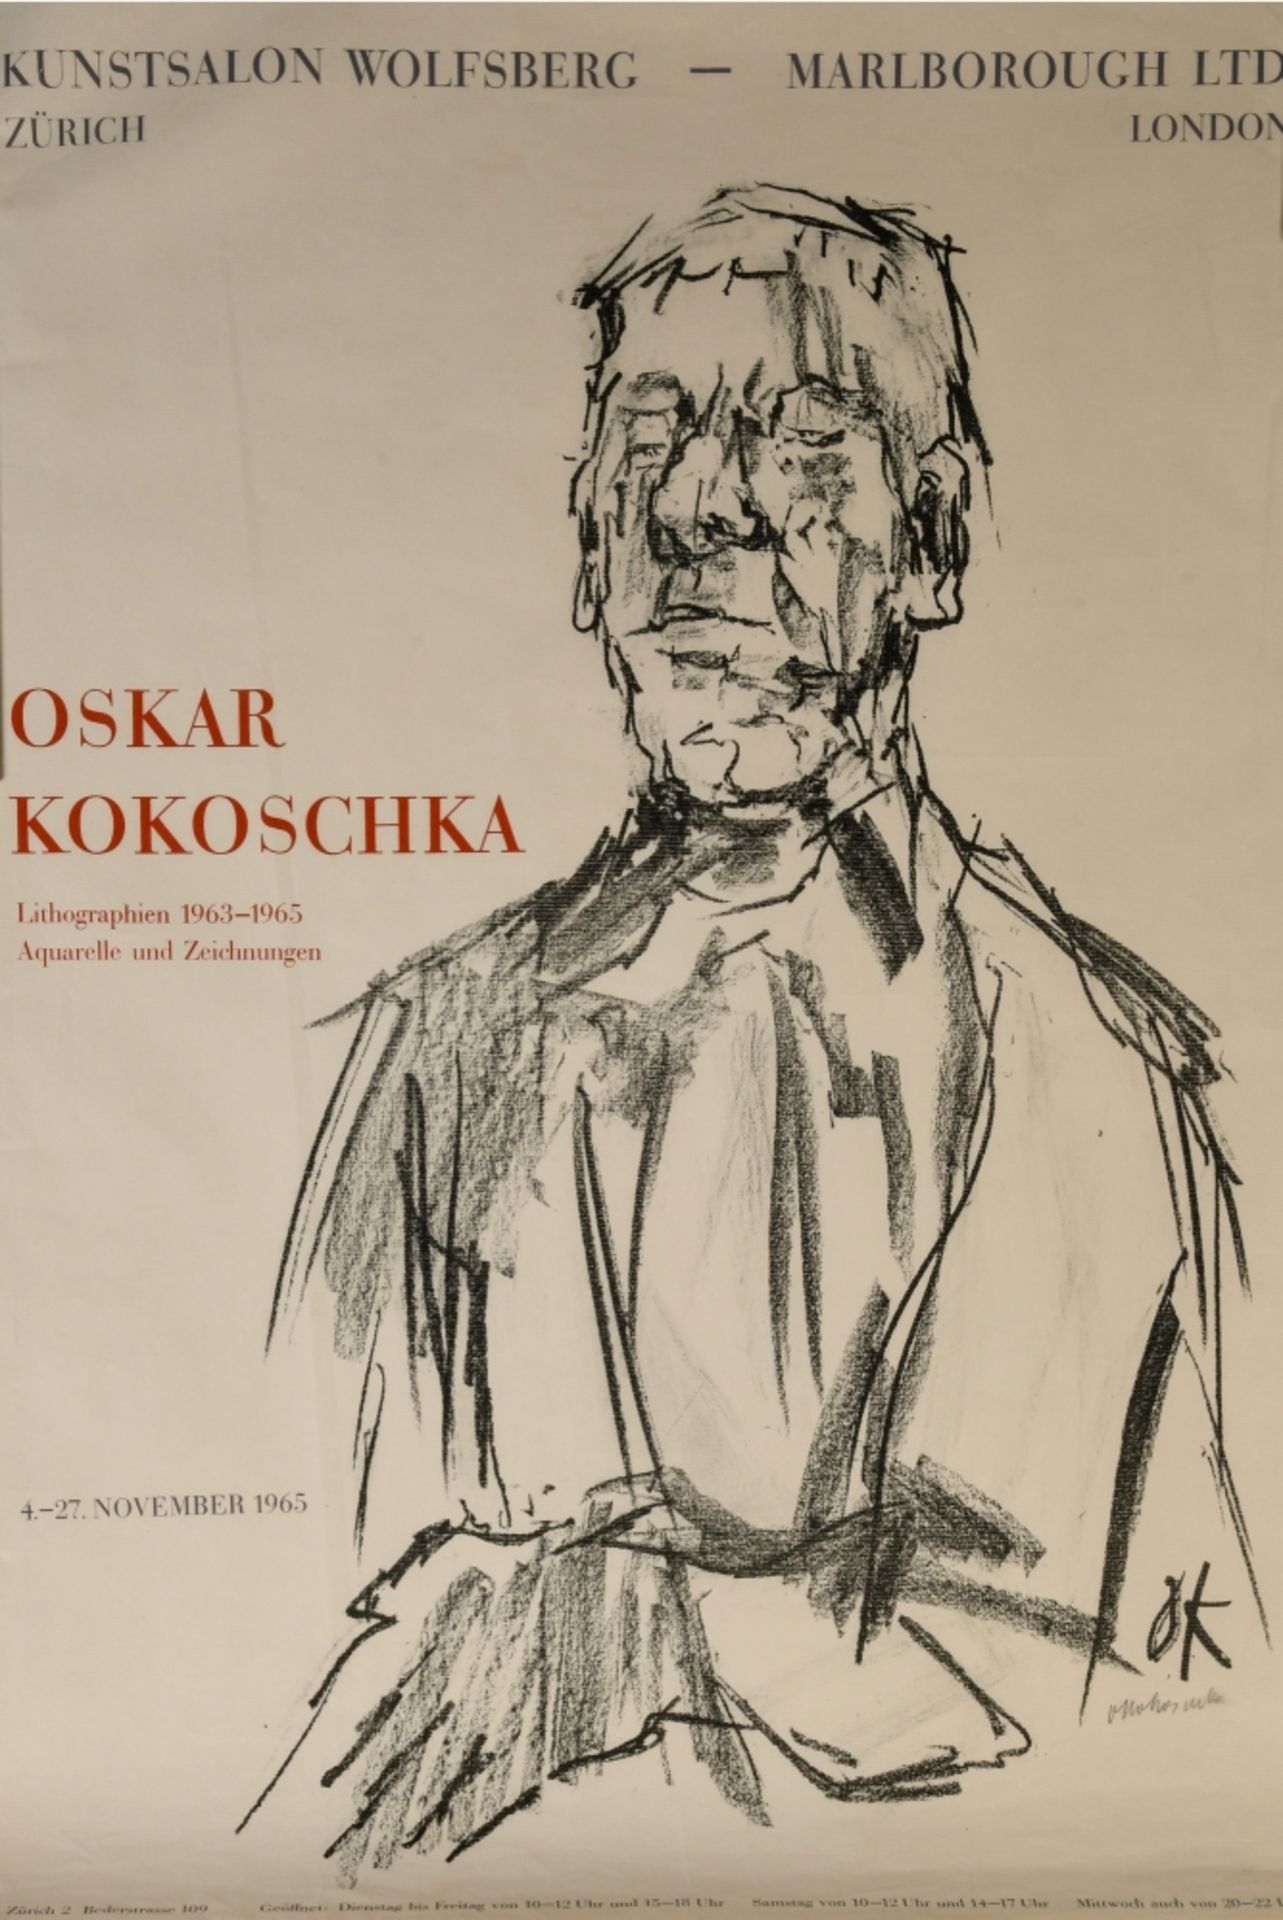 Kokoschka, Oskar, 1886 Pöchlarn - 1980 Villeneuve